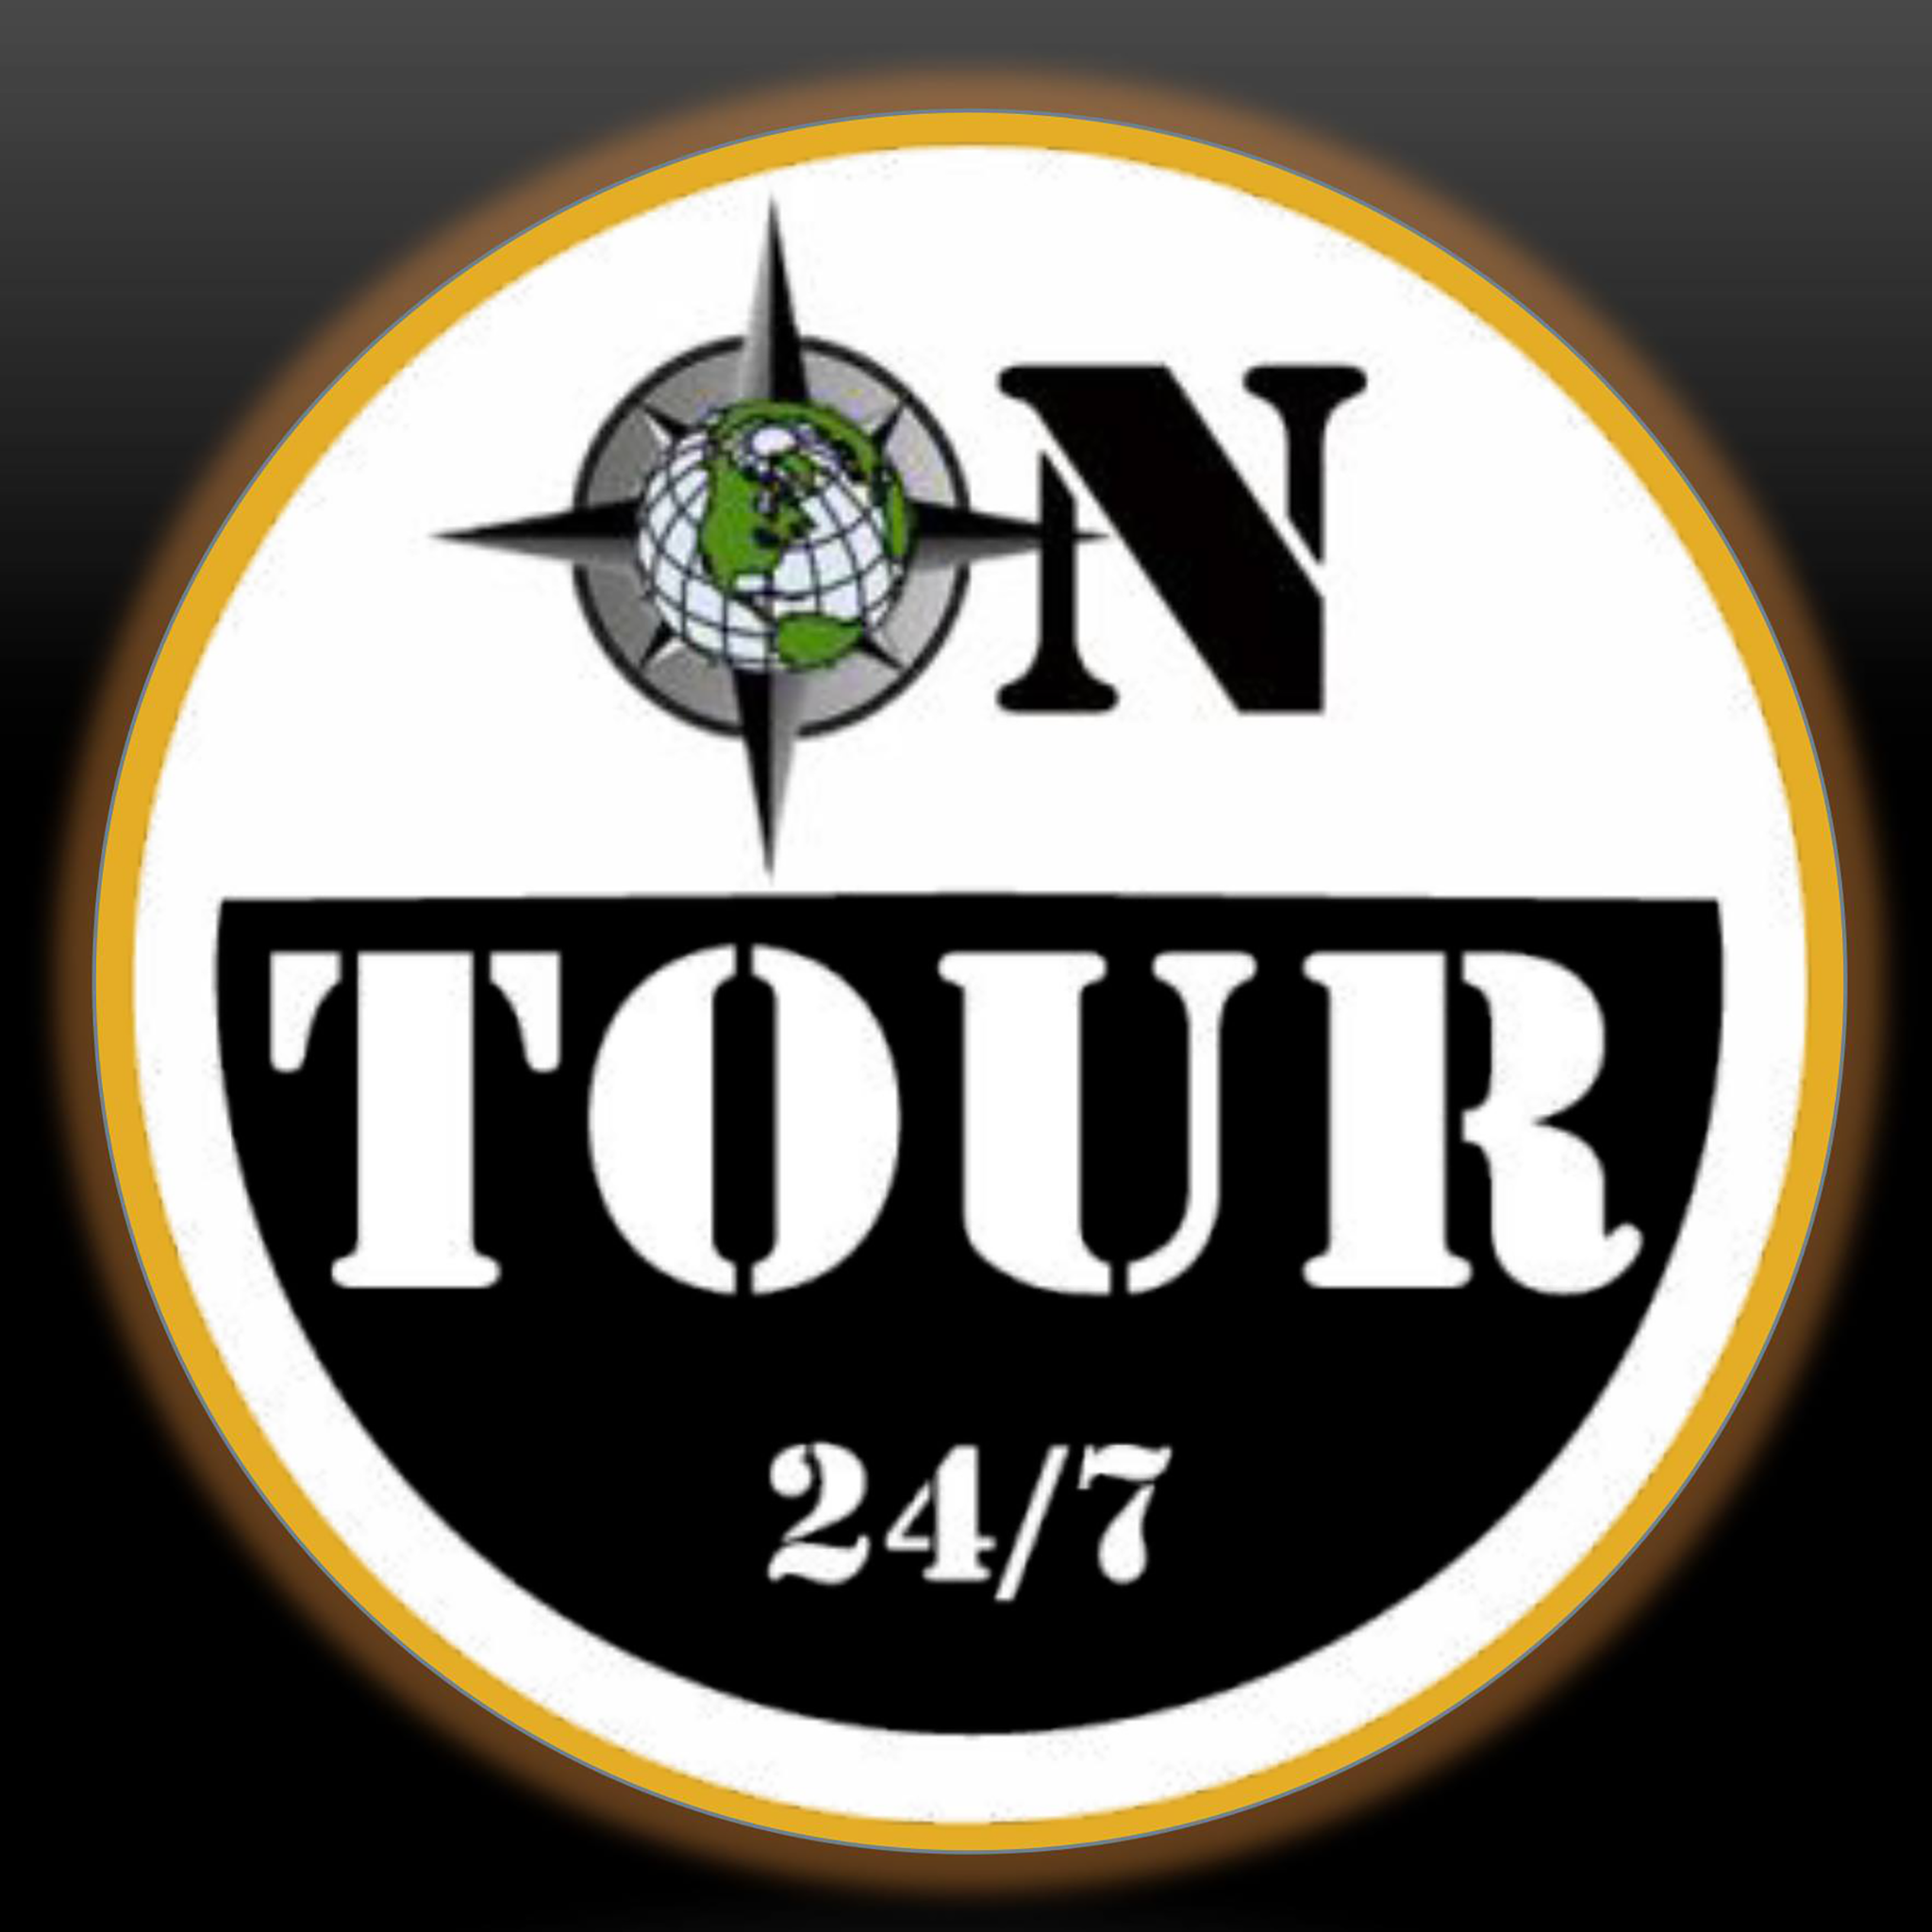 tour 24 company